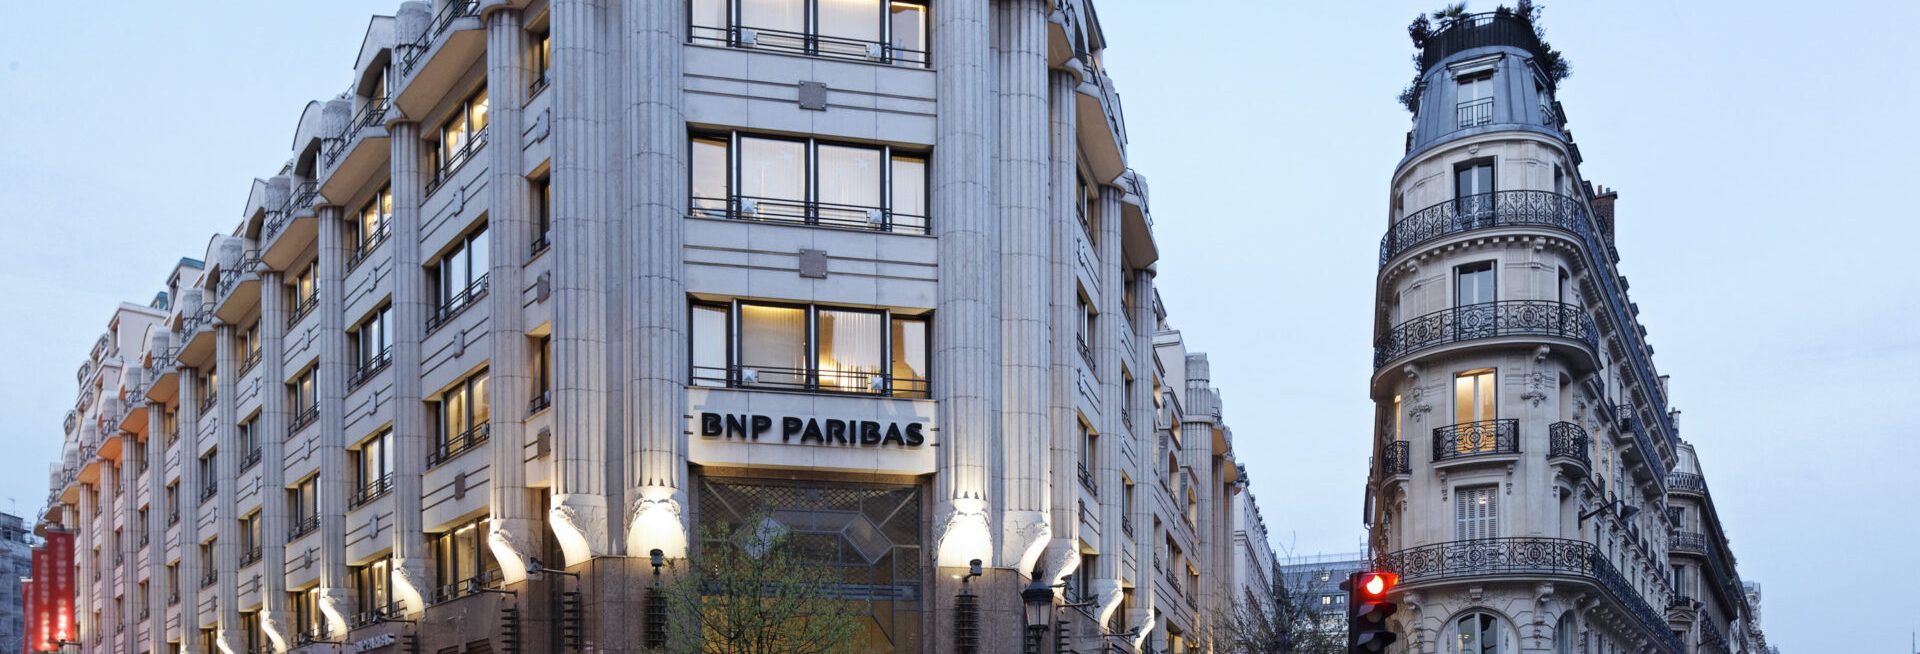 Photo of BNP Paribas Paris building